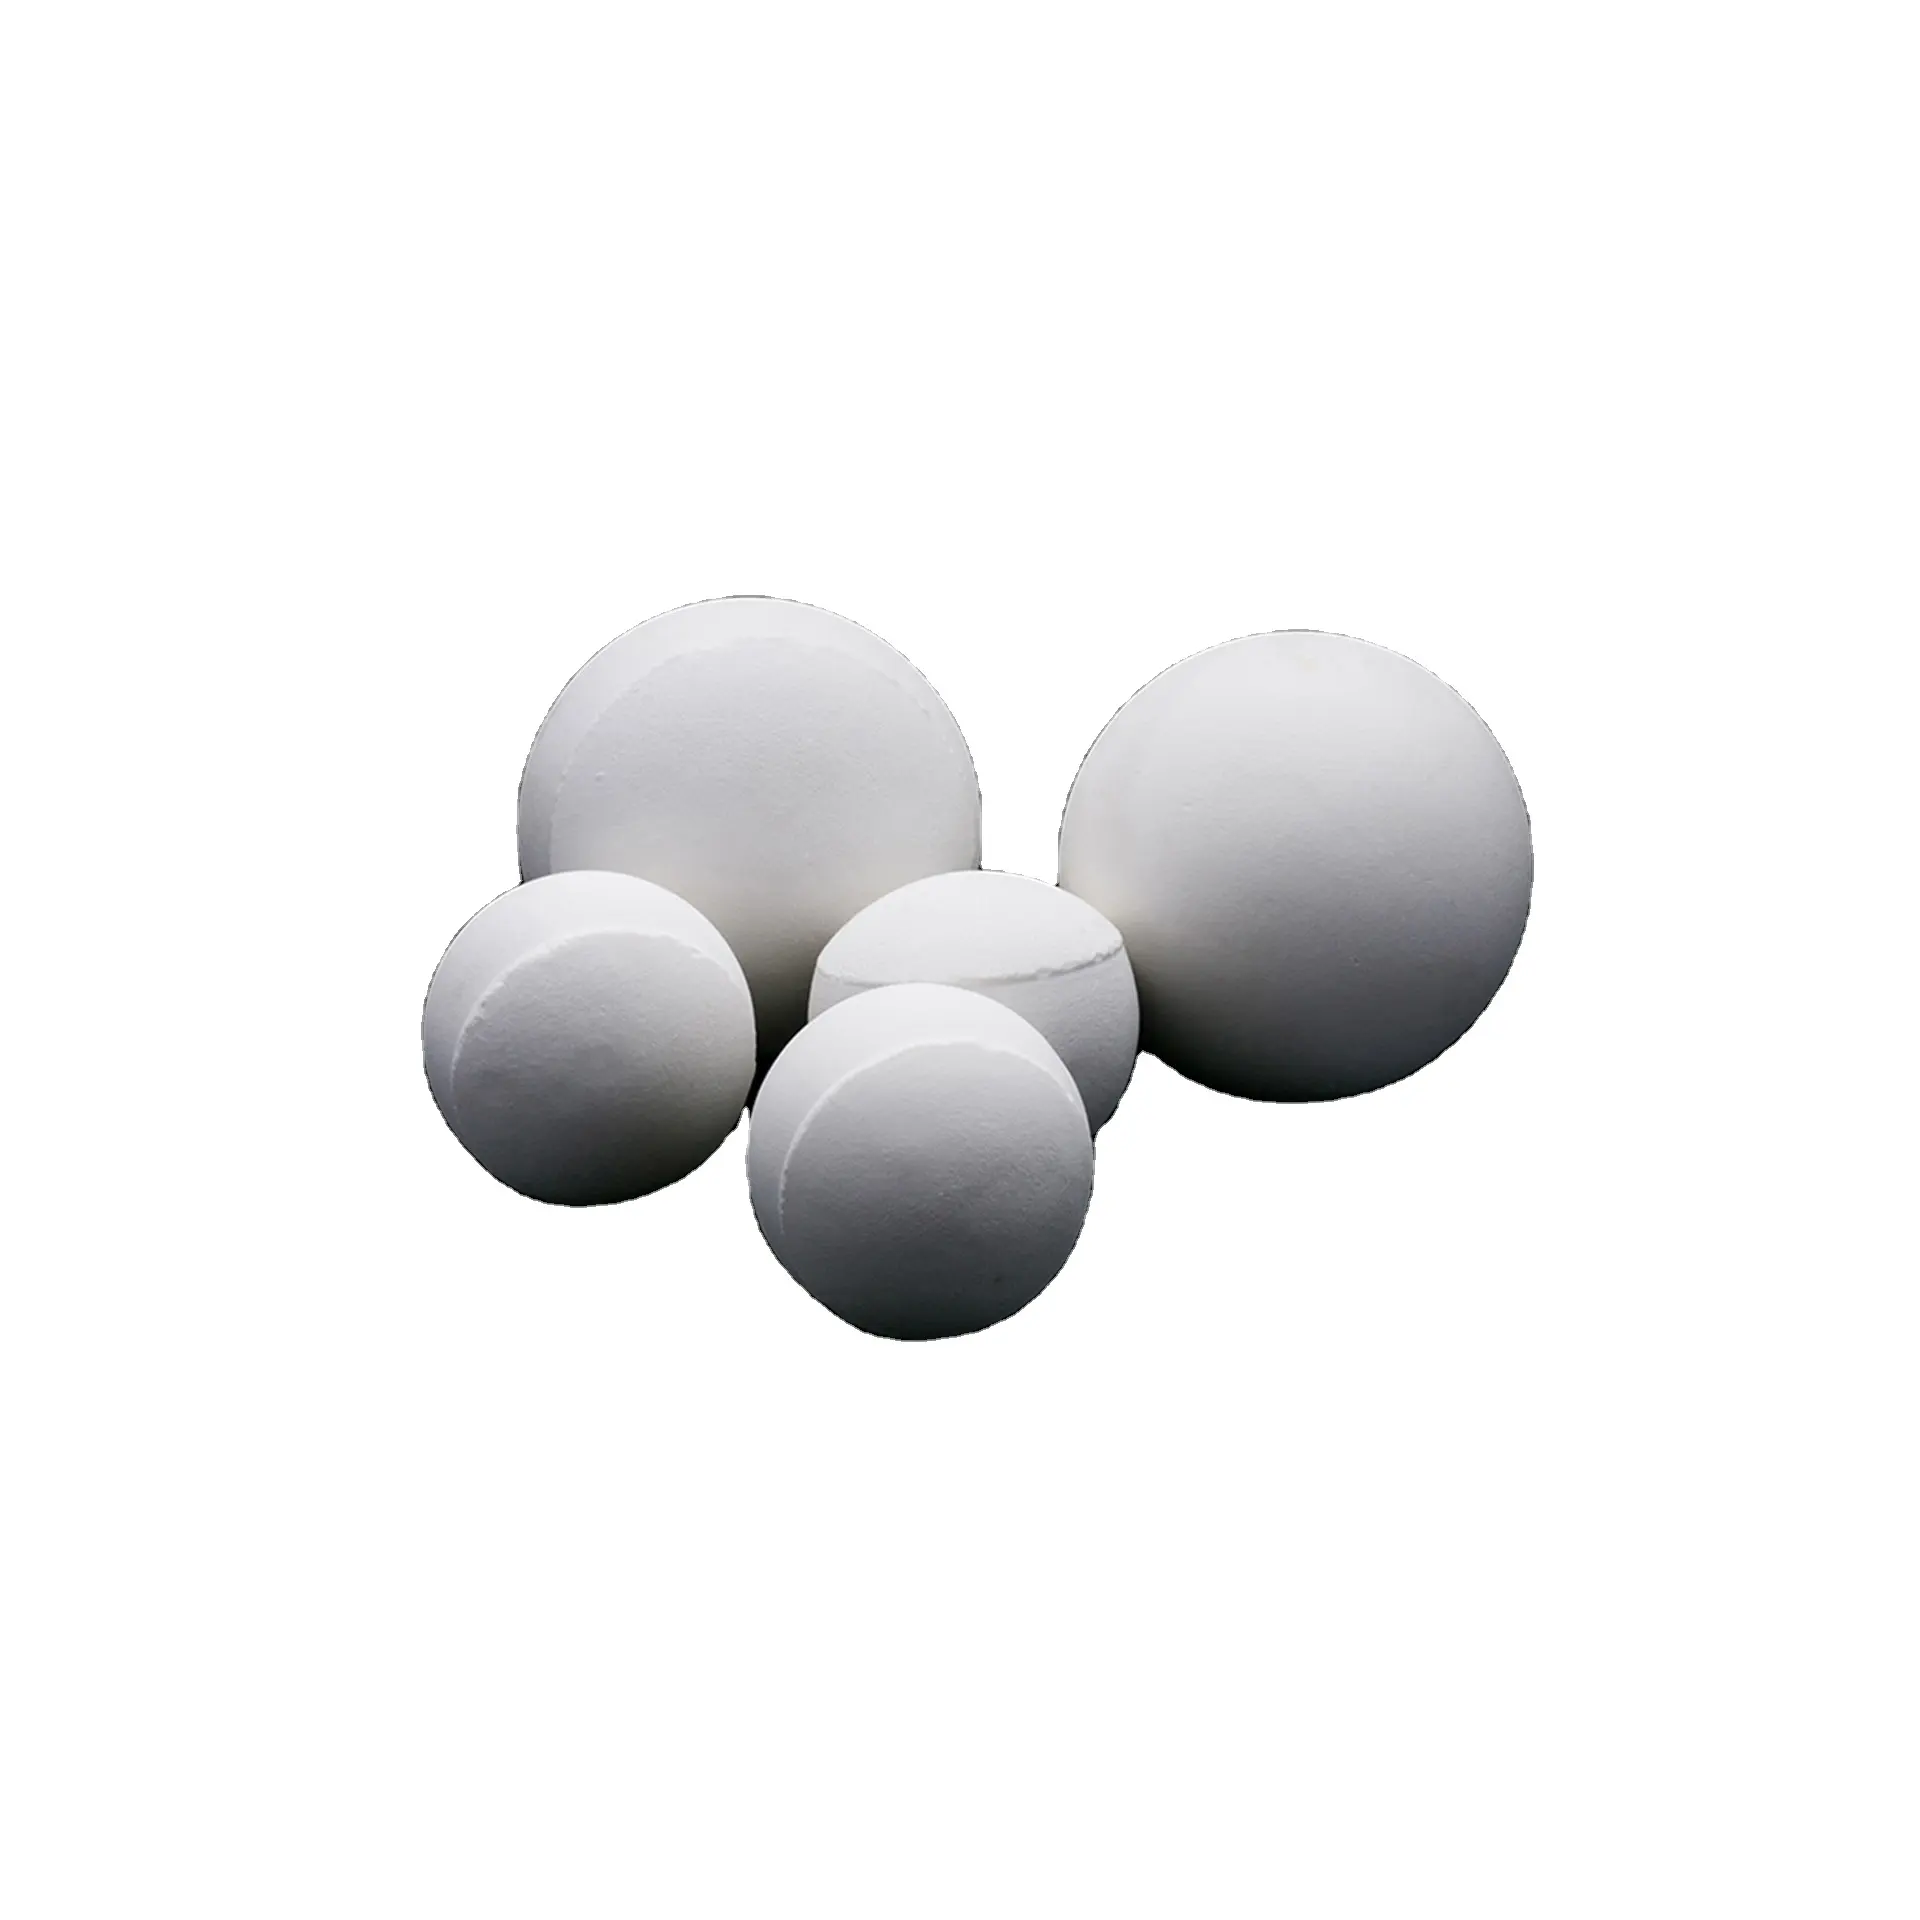 92% 95% taşlama değirmeni uygulama endüstriyel seramik inert alümina beyaz aşınmaya dayanıklı alümina seramik 95 alüminyum topu